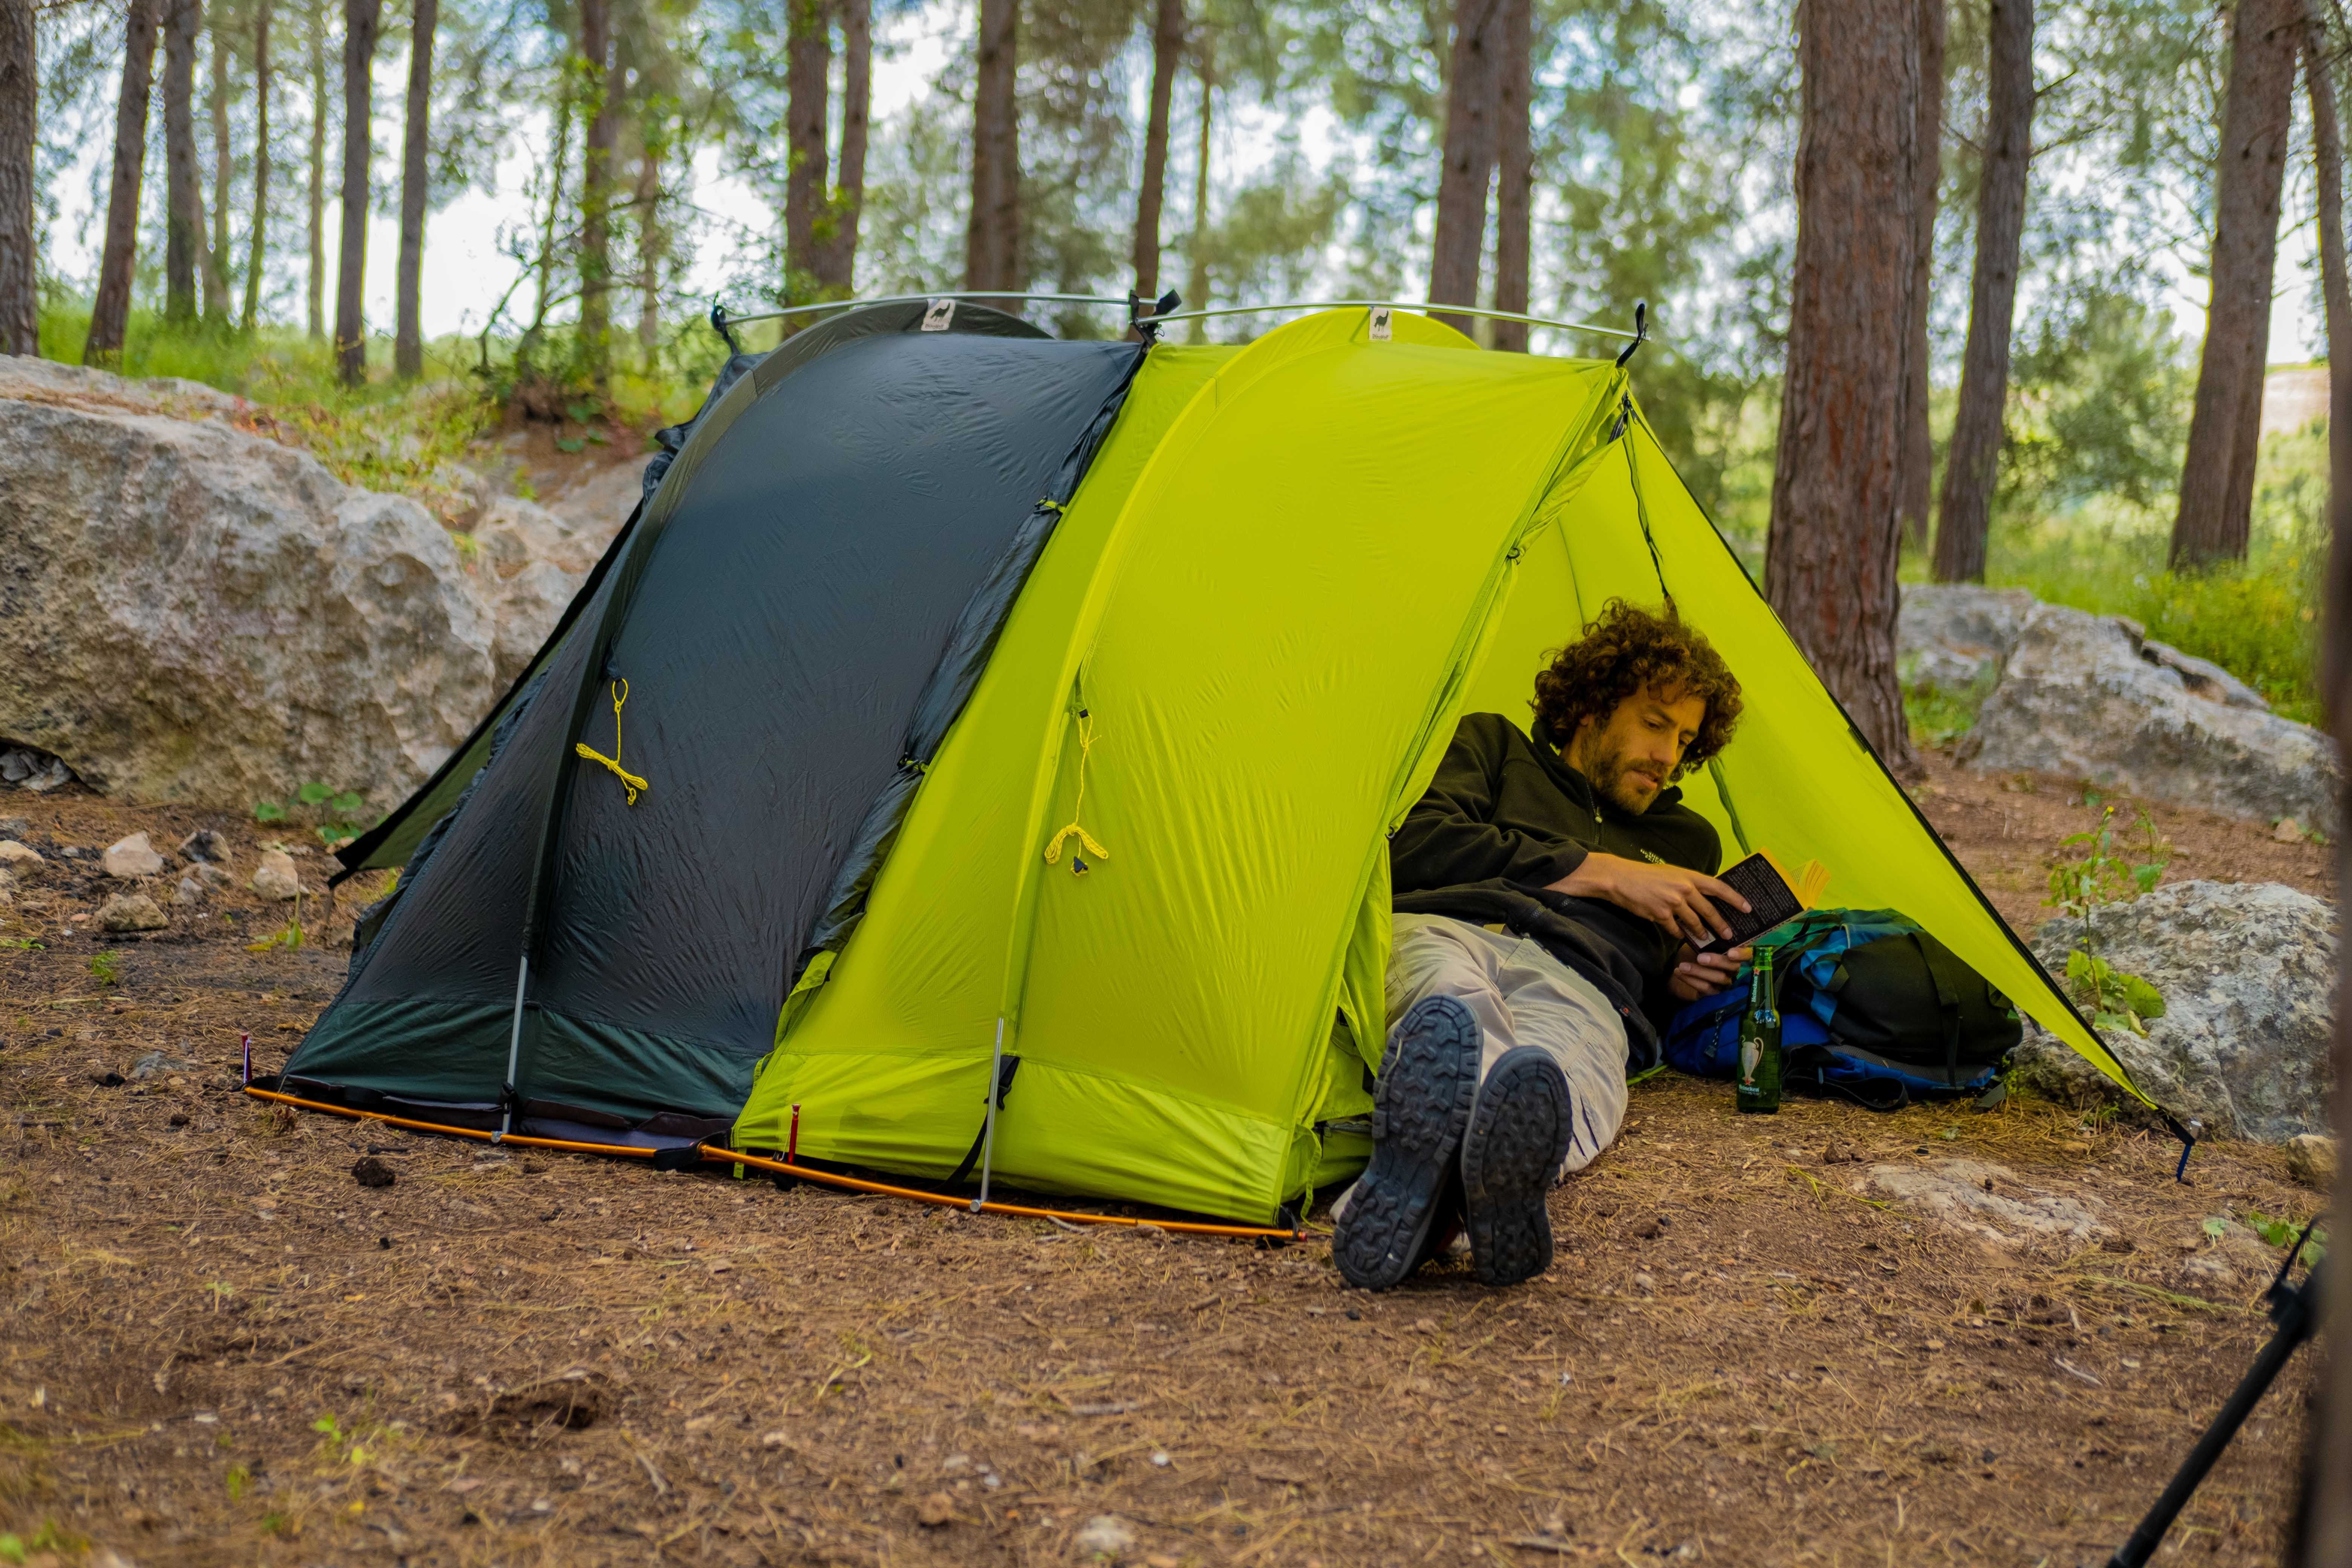 Camp men. “Modular Tent System” палатки. Спать в палатке. Палатки для кемпинга. Ночевка в палатке.